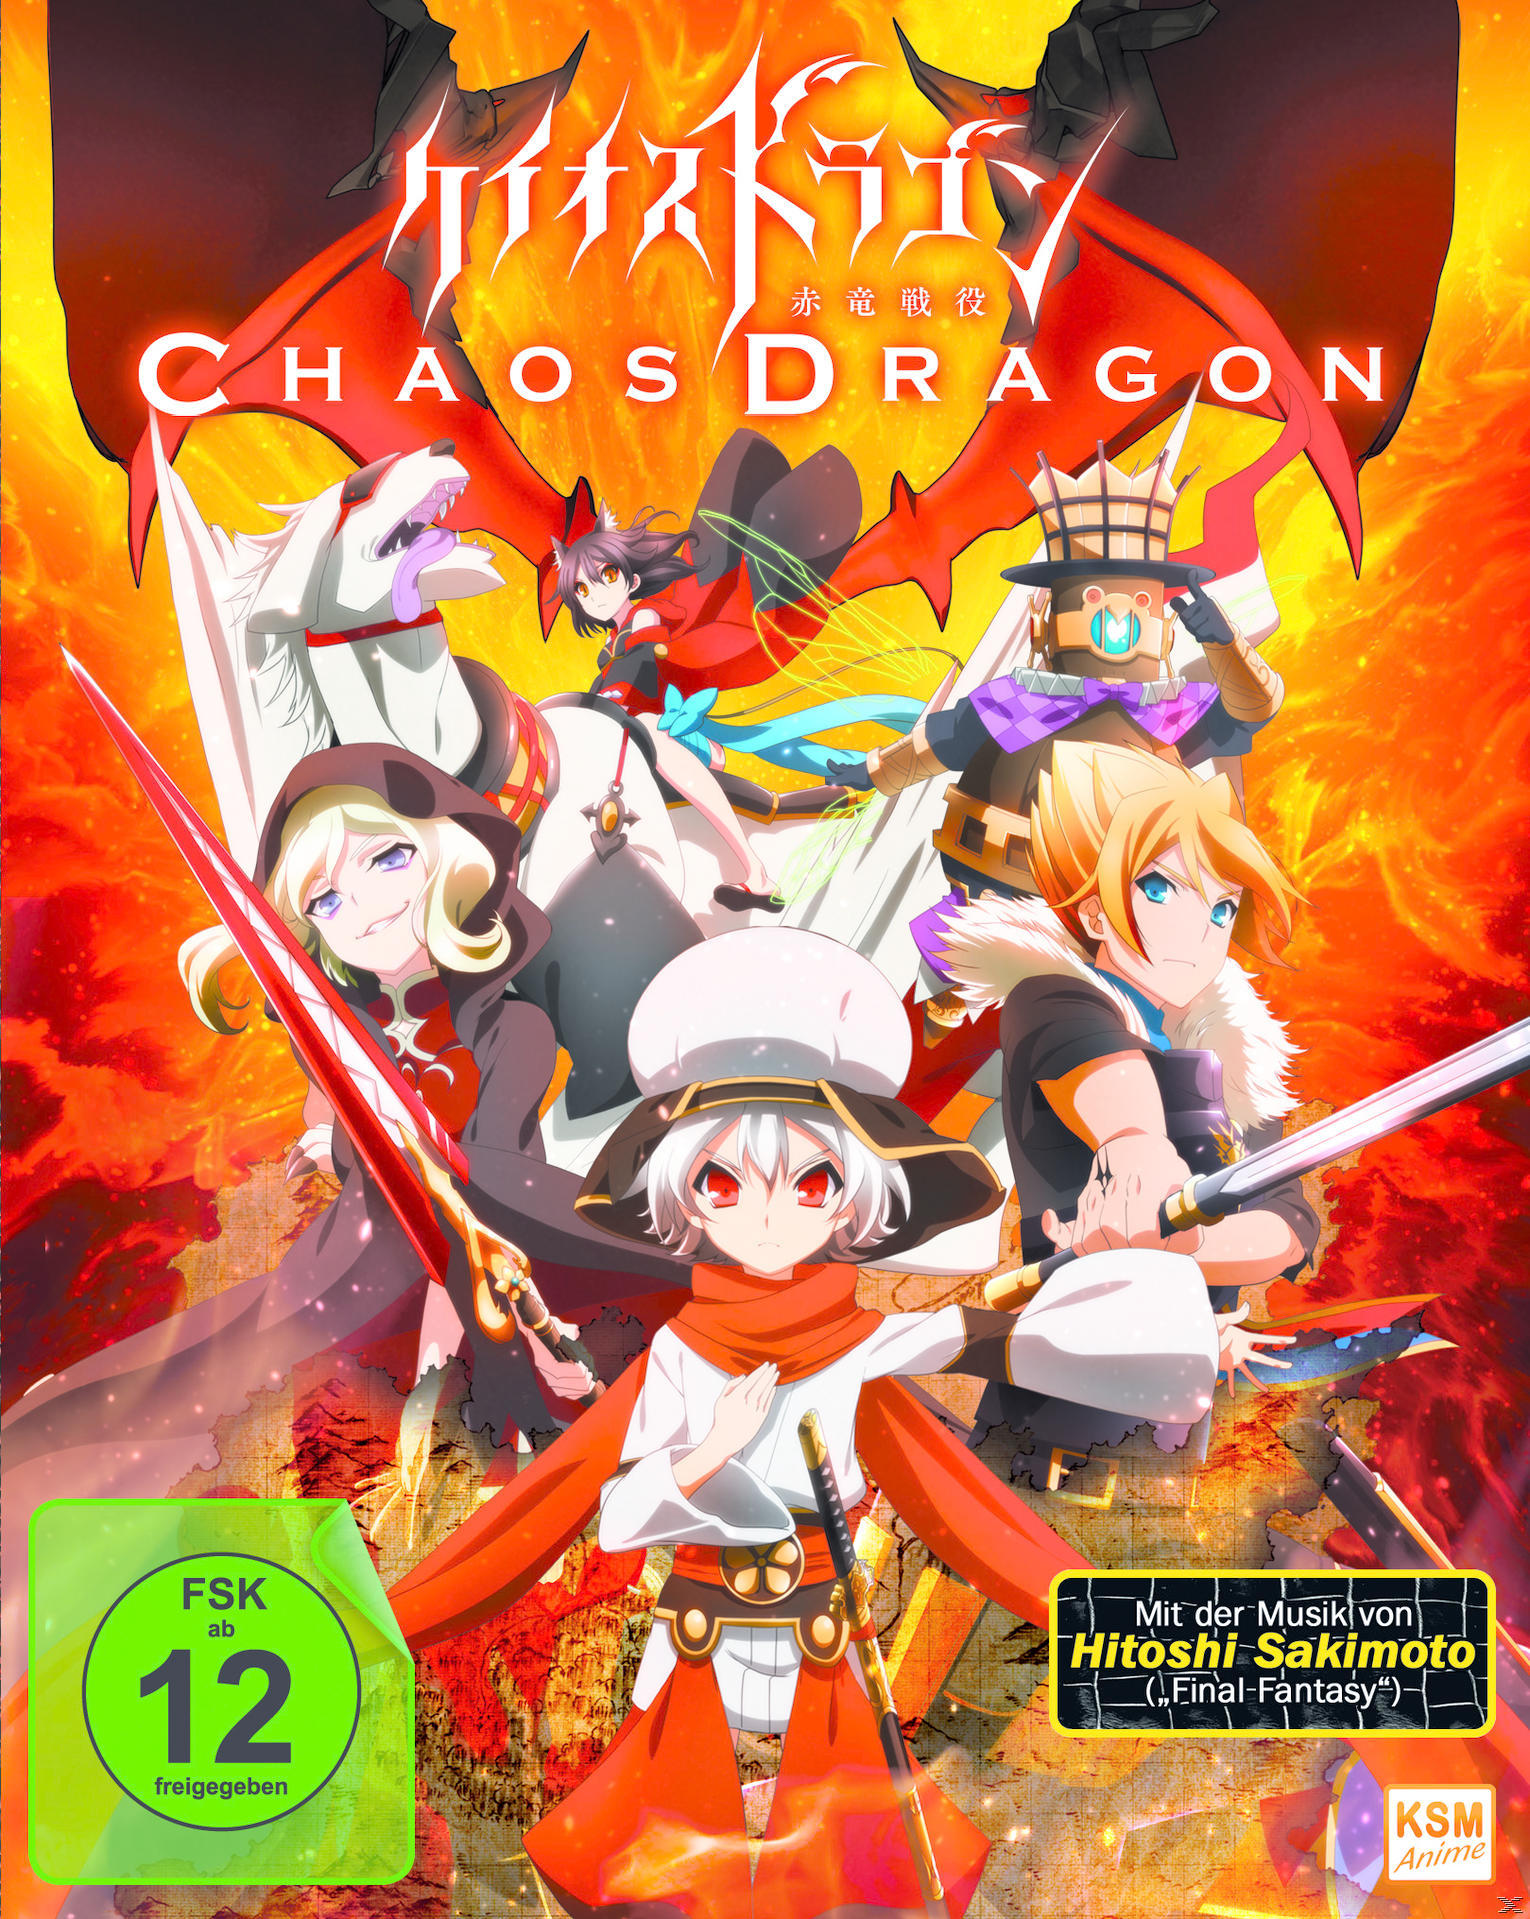 Episode Dragon Blu-ray 01-04 - Chaos